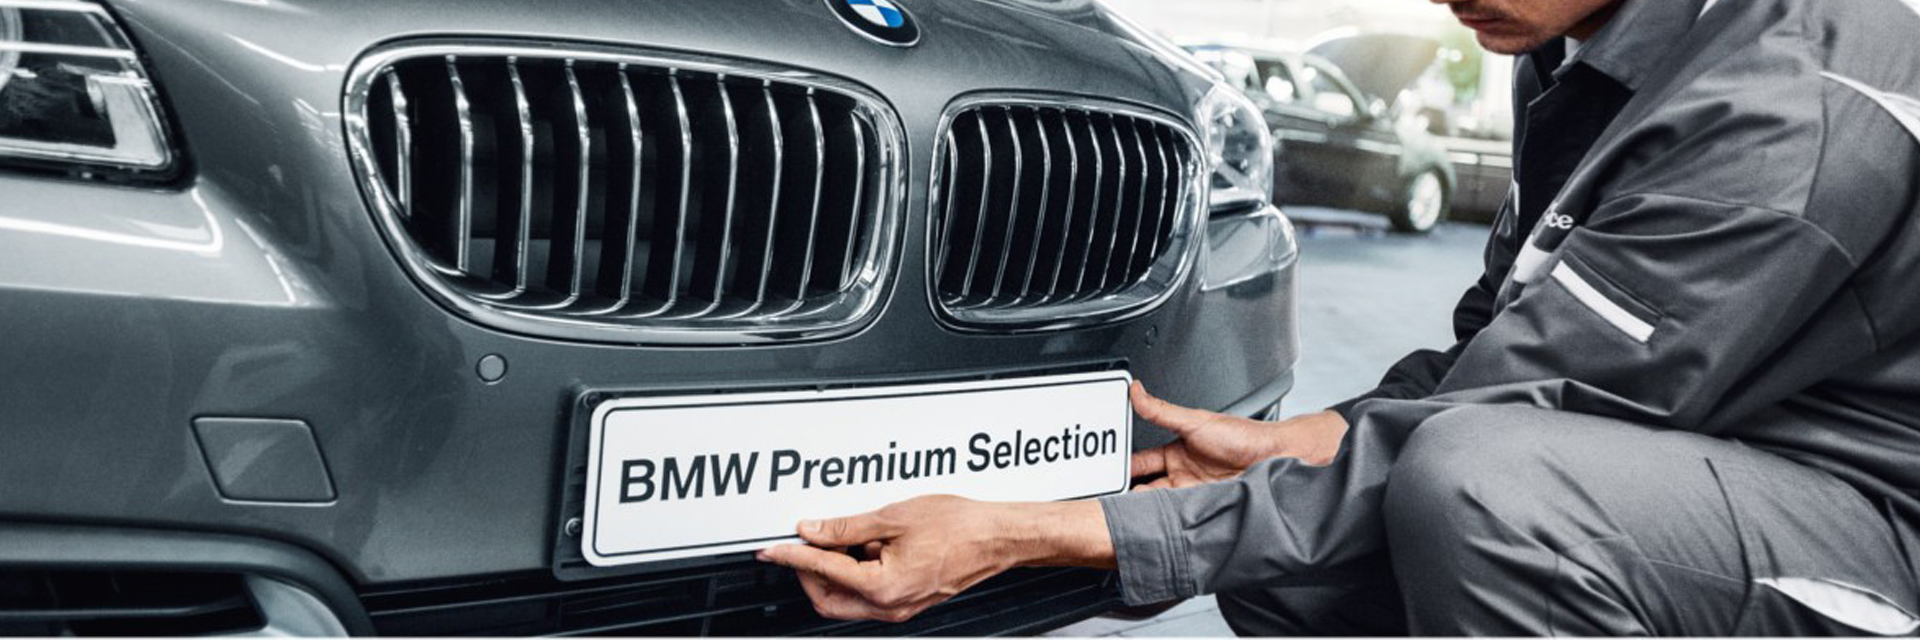 BMW Premium Selection, BPS, Usados BMW, Santogal BMW, carros usados, carros de serviço, BMW, Paço de Arcos Alfragide Lisboa Loures Setúbal